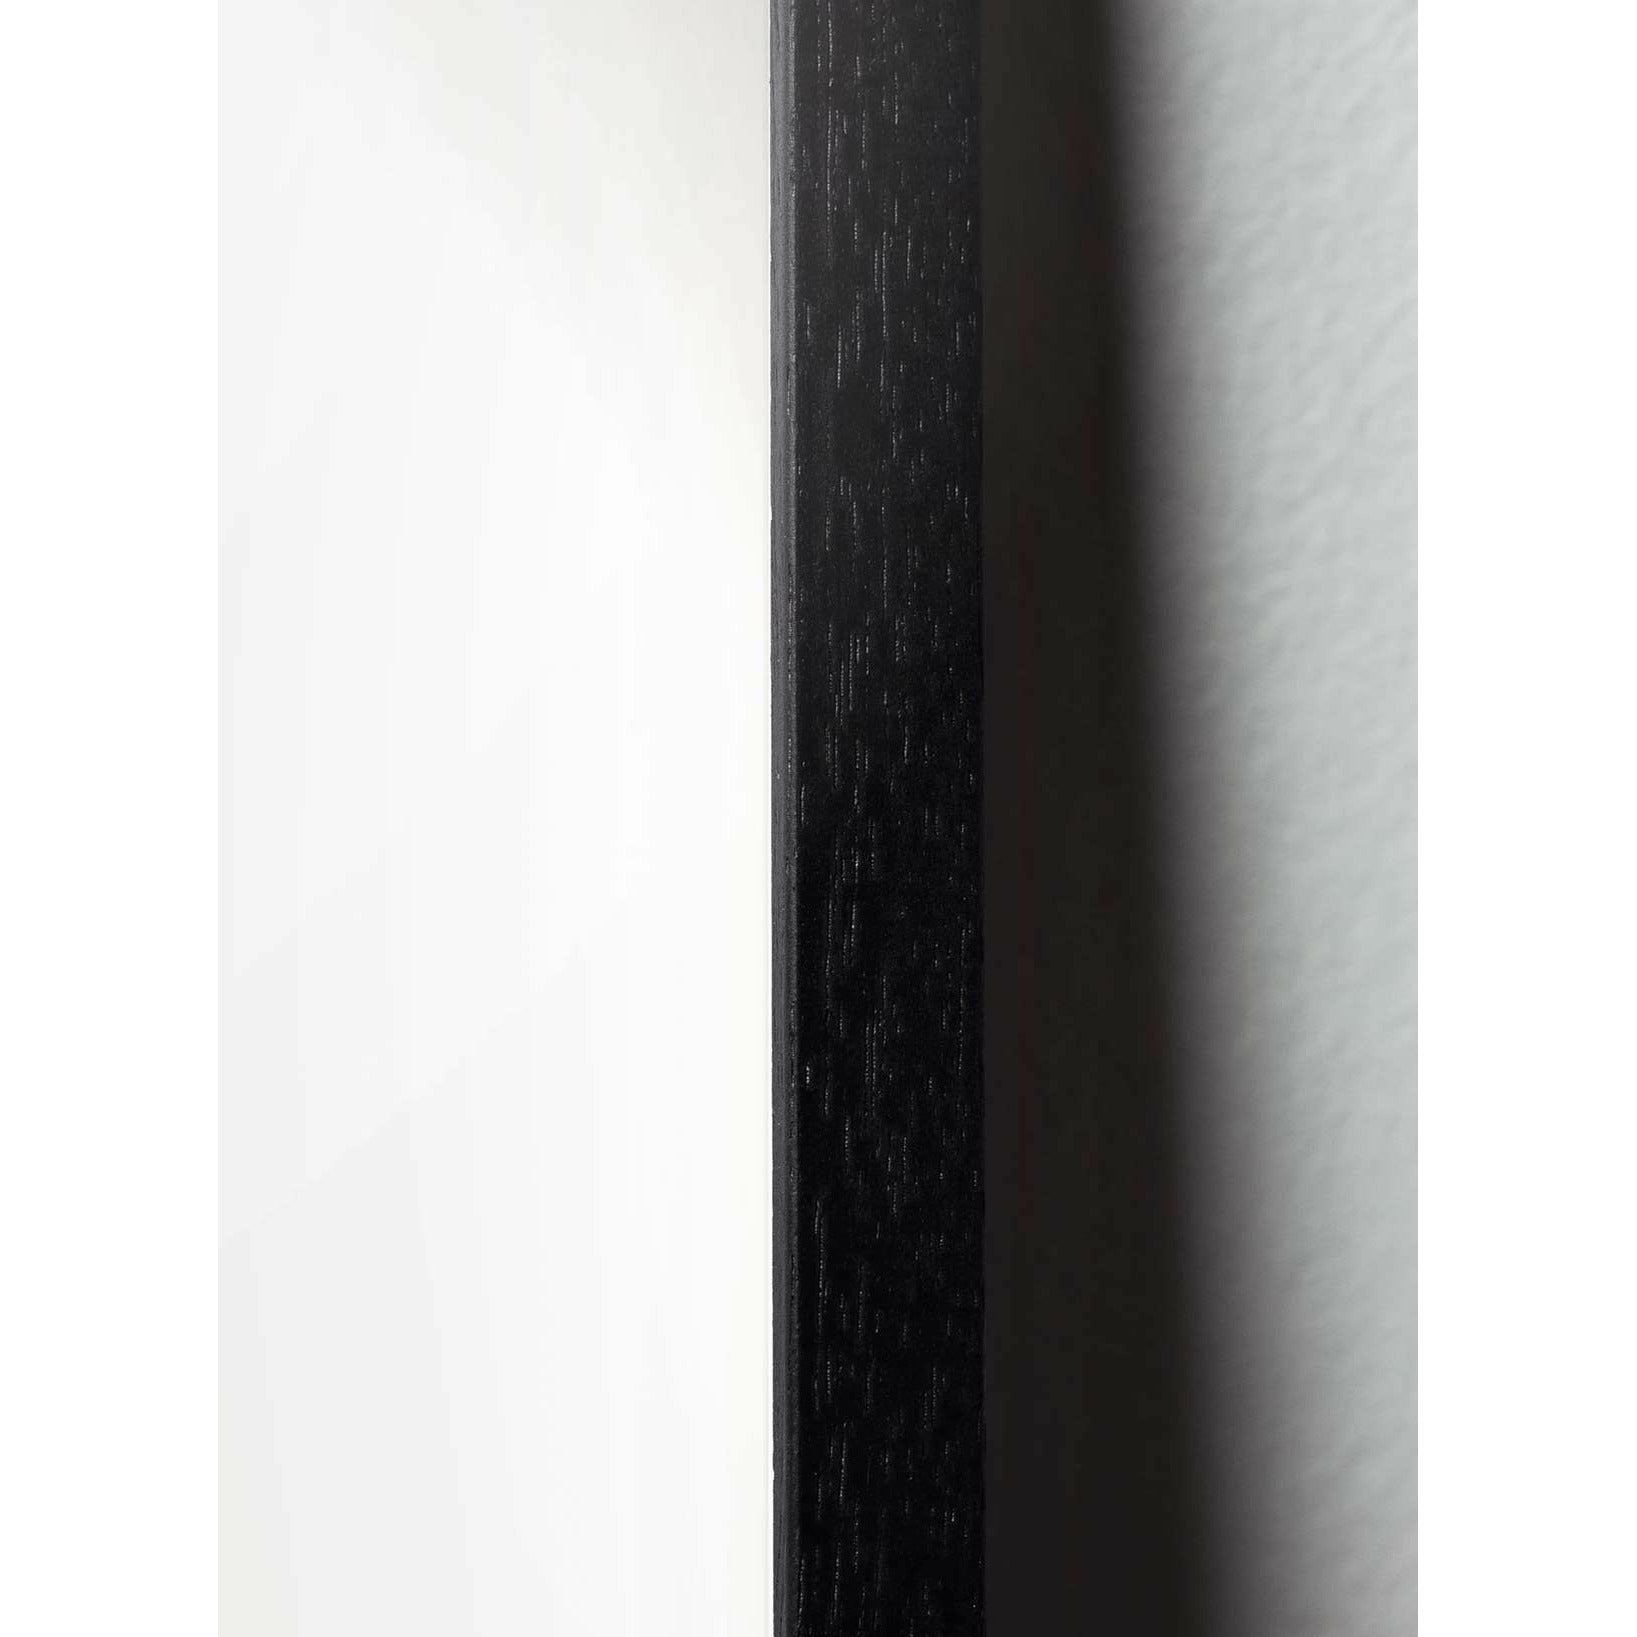 Brainchild Tallkotte Line Affisch, ram i svart lackerat trä 50x70 cm, vit bakgrund